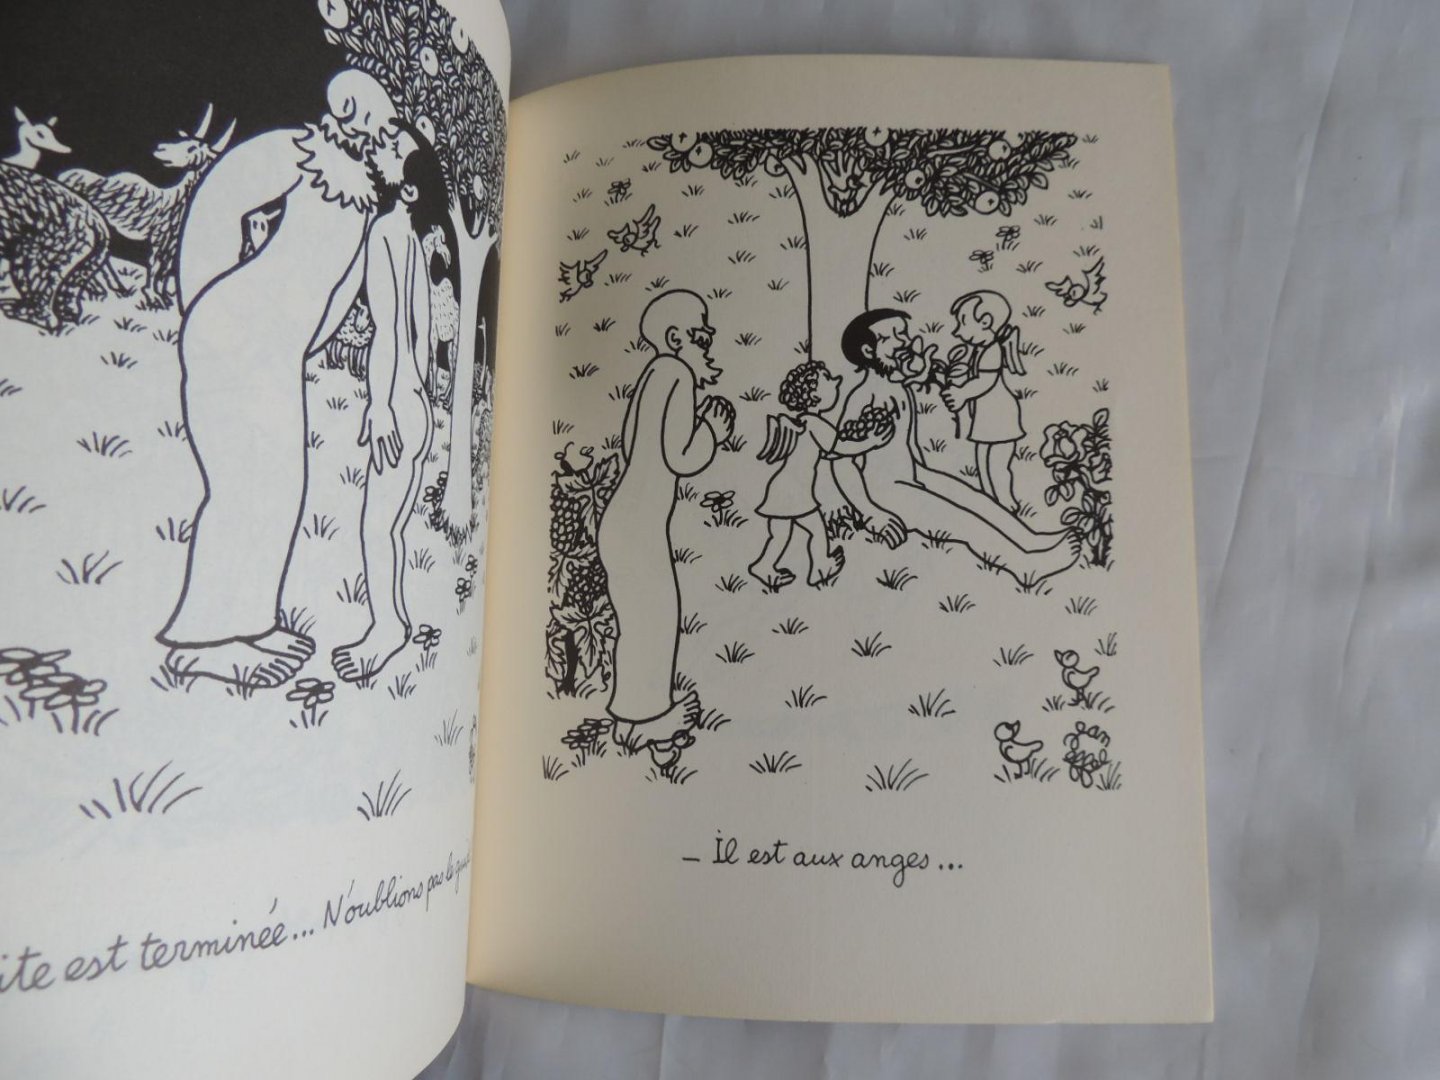 Effel, Jean - Le roman D'Adam et Eve - Seul maître à bord. Le création de l'homme, Le jardin d'Eden, L'école paternelle. Operation Eve.